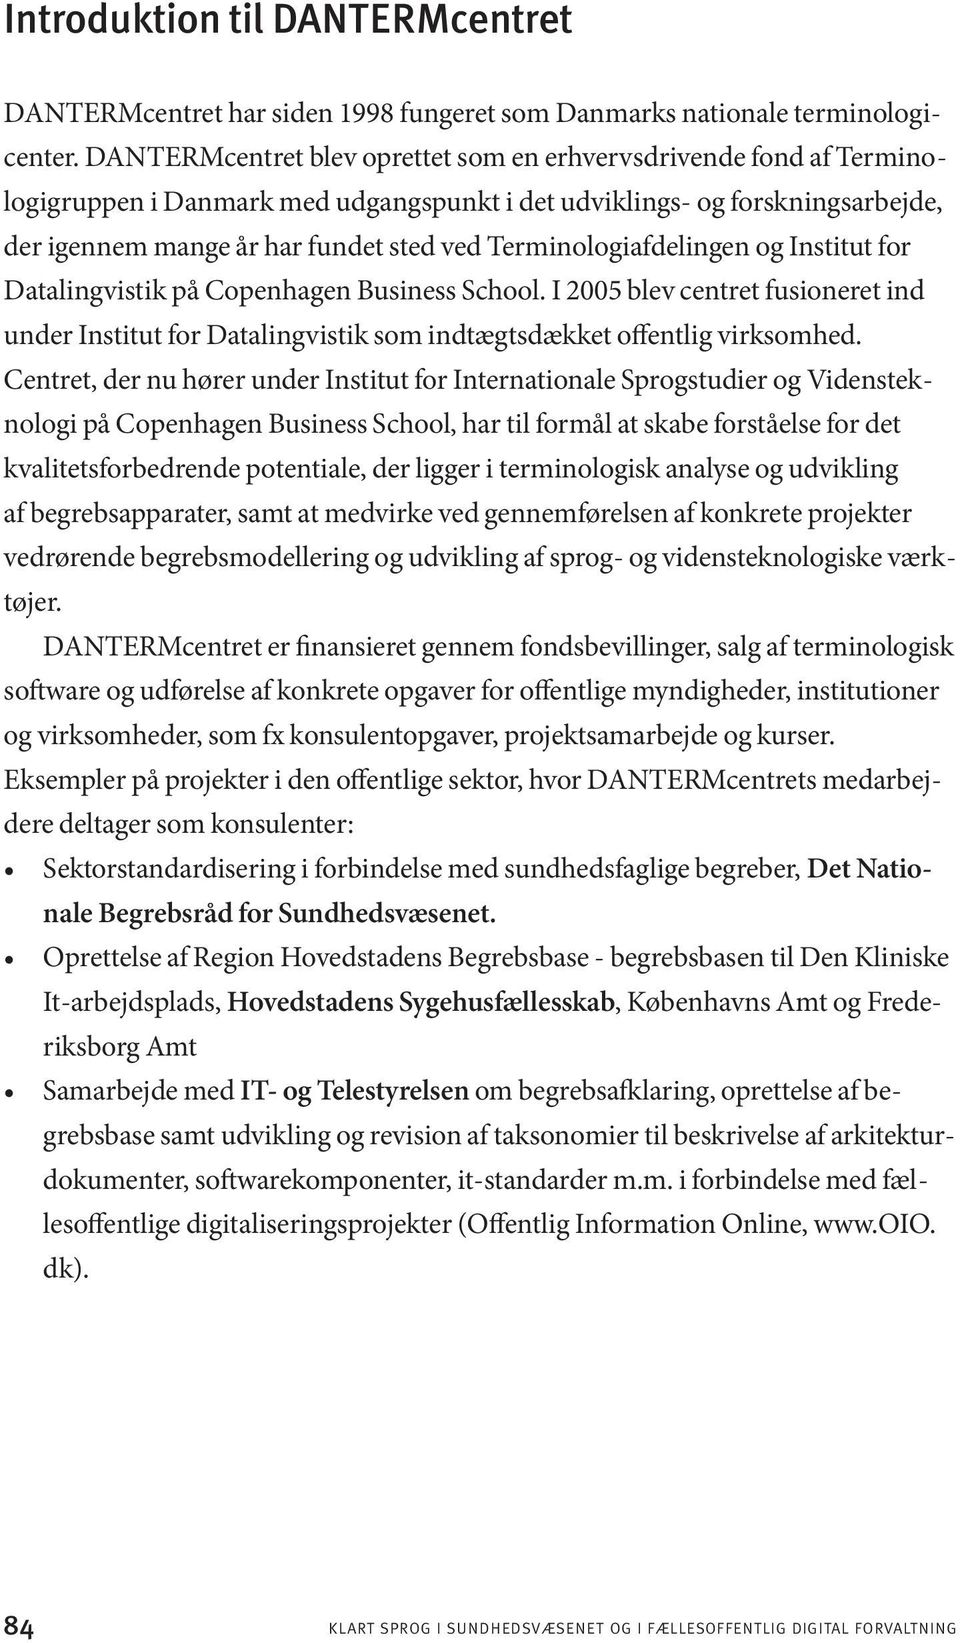 Terminologiafdelingen og Institut for Datalingvistik på Copenhagen Business School. I 2005 blev centret fusioneret ind under Institut for Datalingvistik som indtægtsdækket offentlig virksomhed.